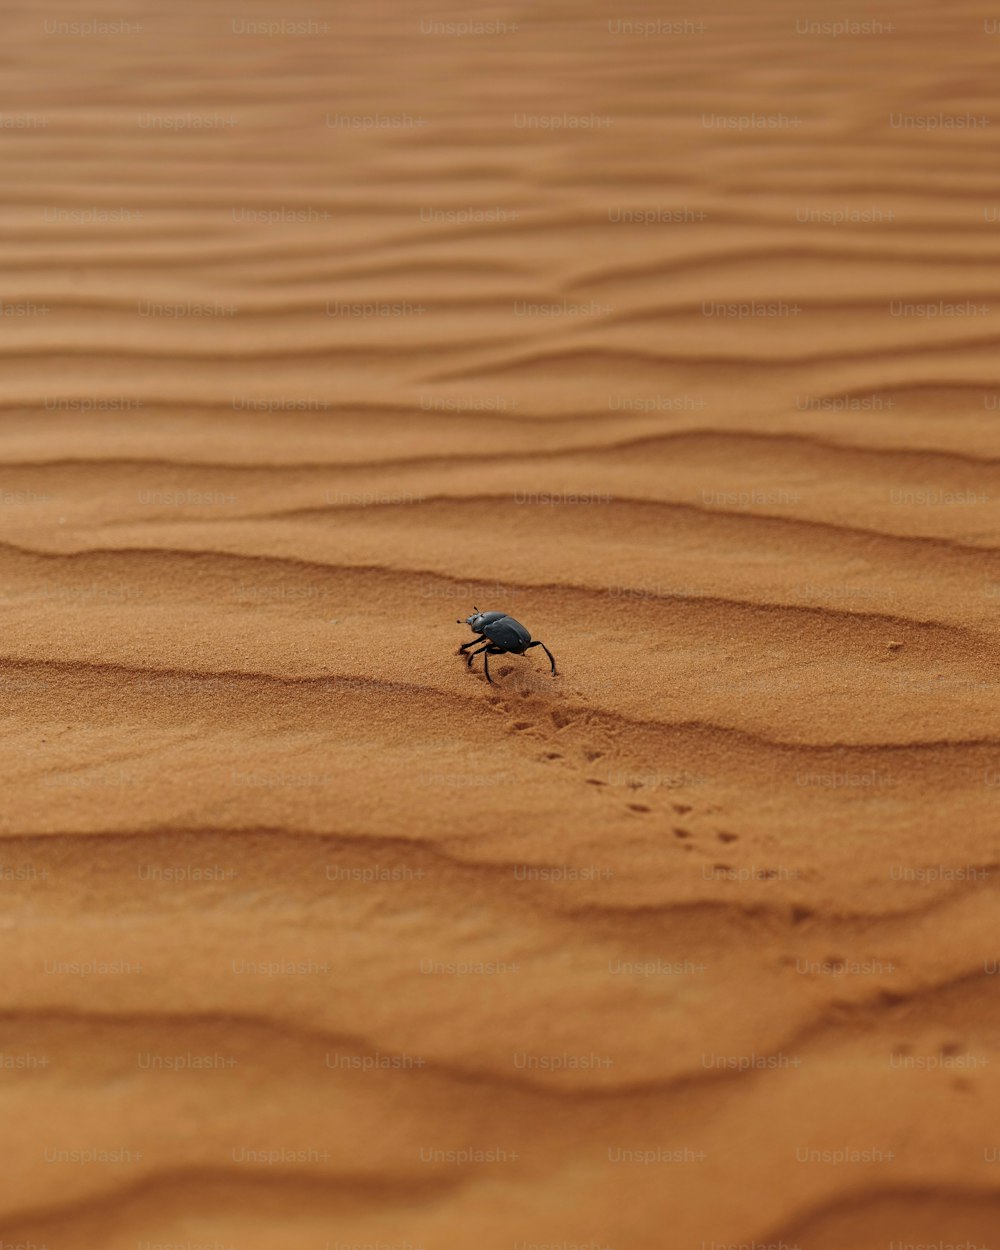 Un insecto arrastrándose por una zona arenosa en el desierto